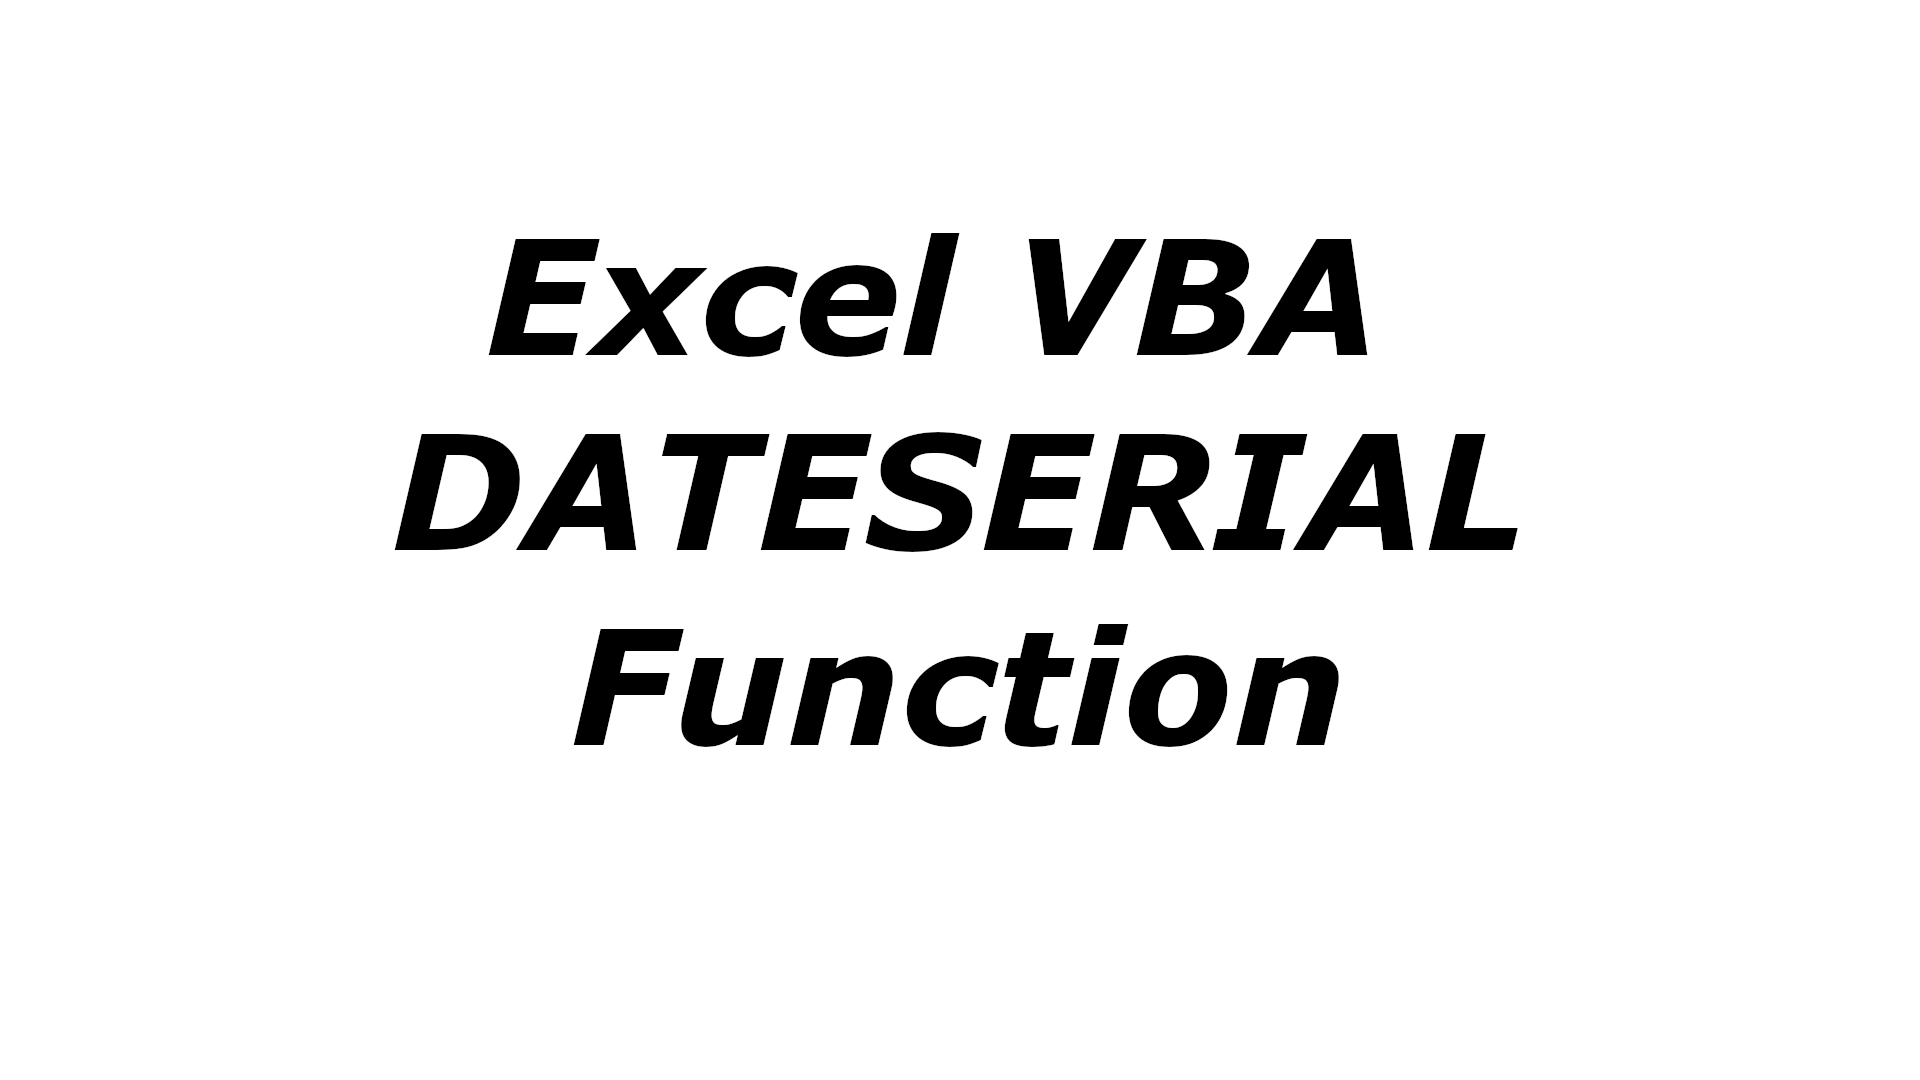 Excel VBA DATESERIAL function